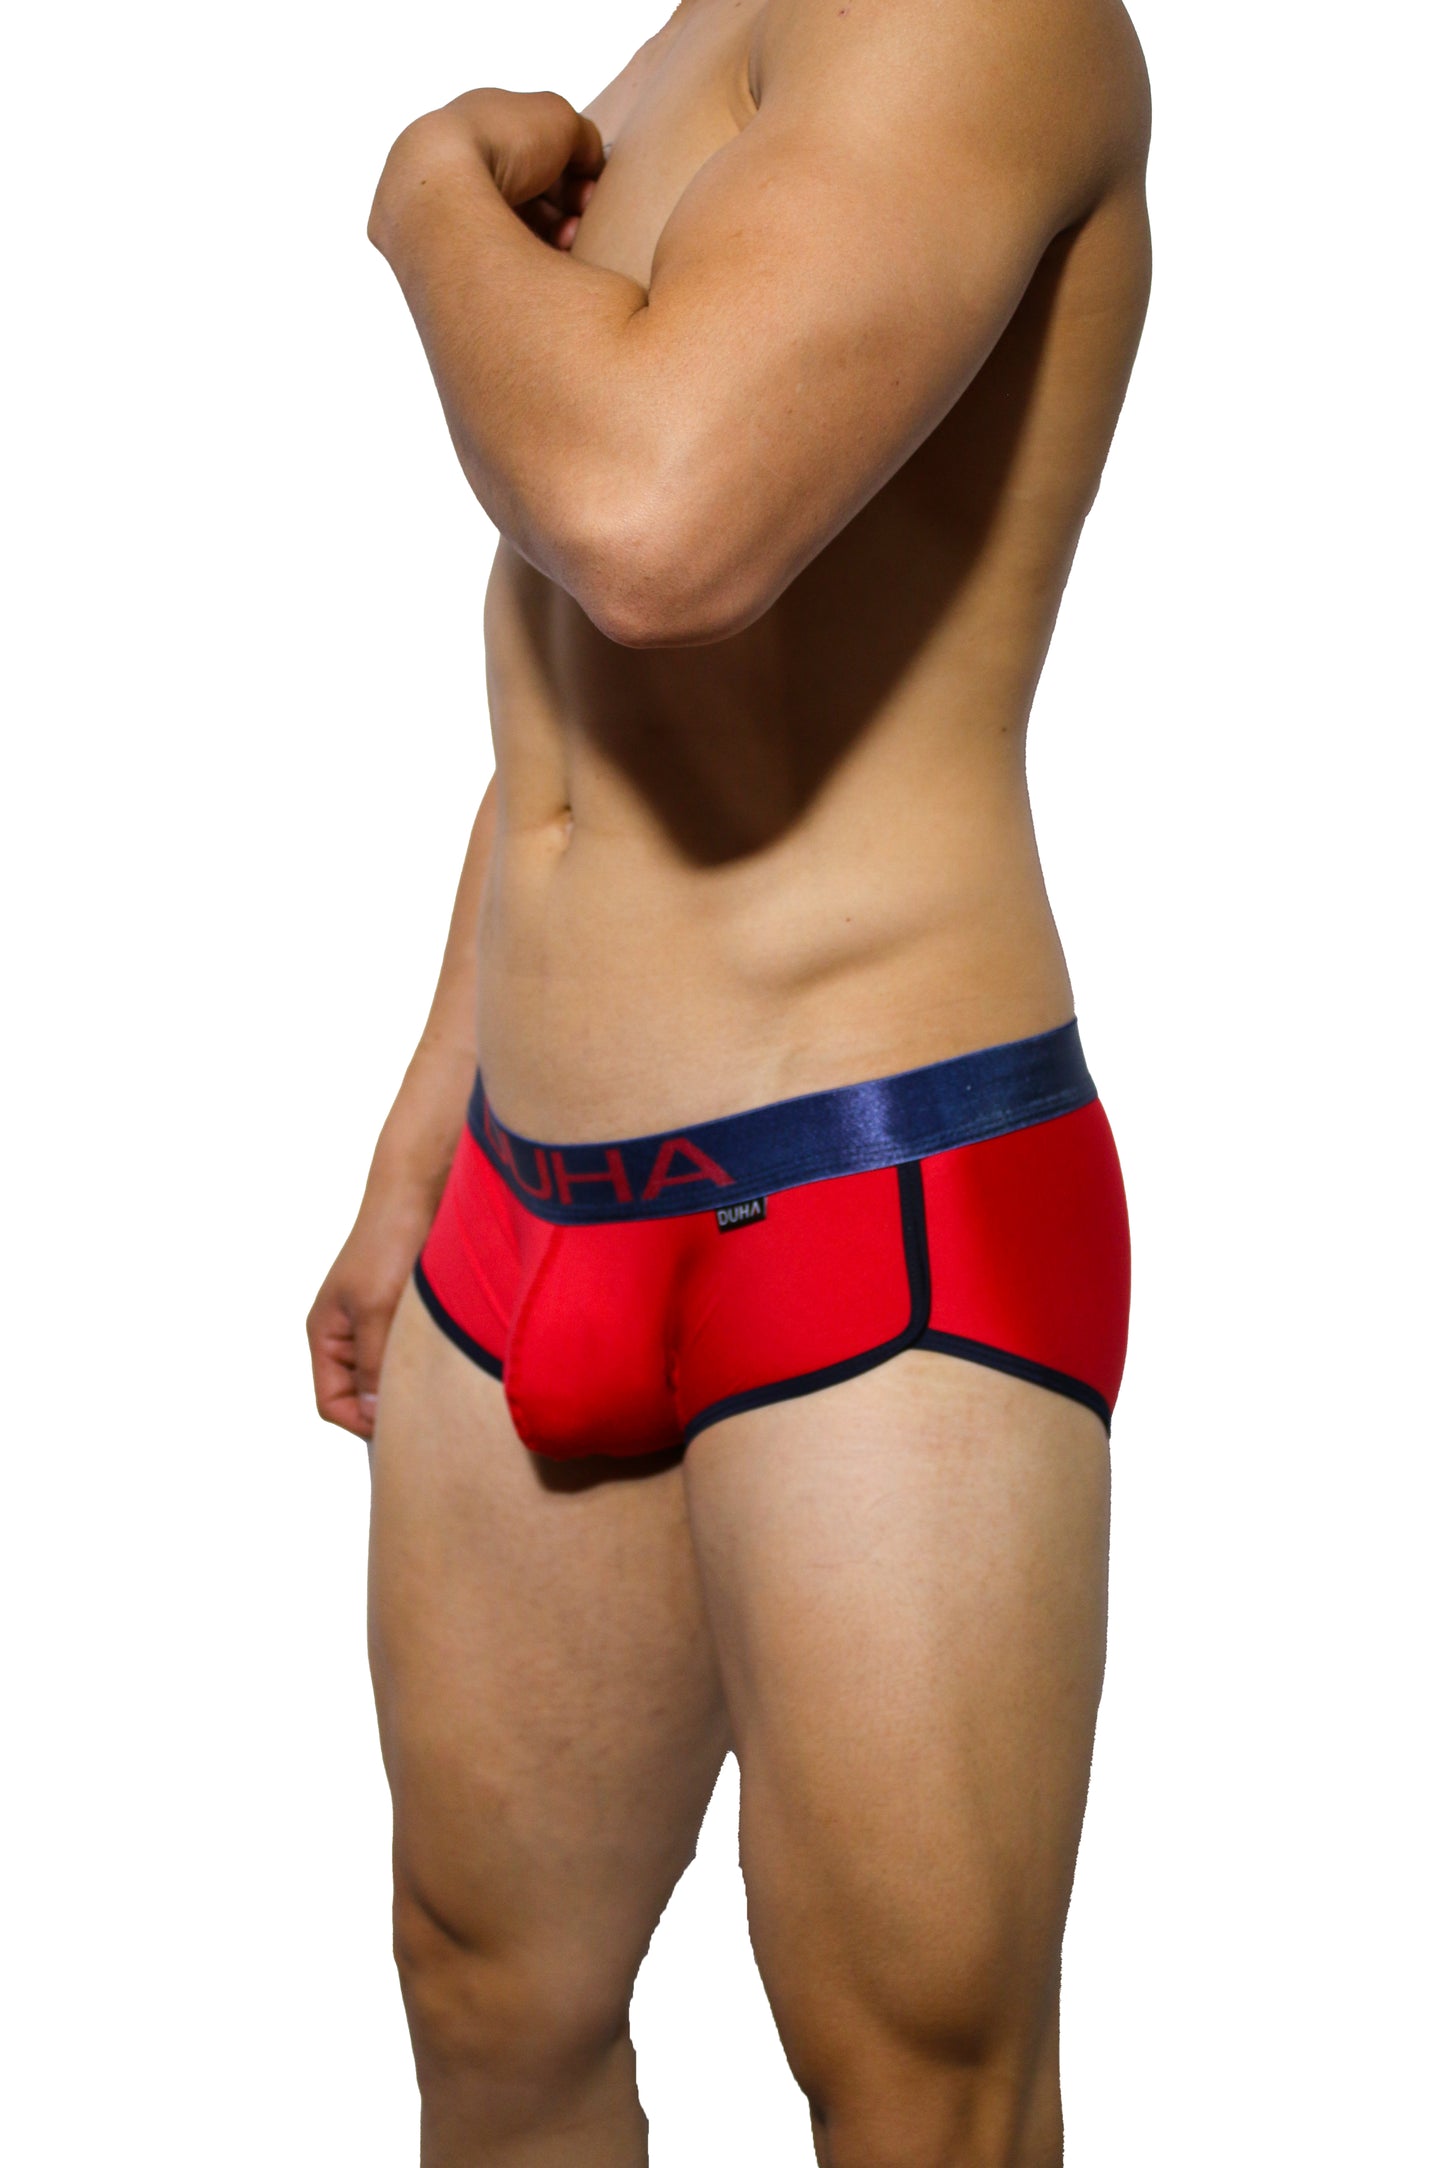 Boxer Brief Men Calzon Duha Underwear Gustavo DGUSMX028